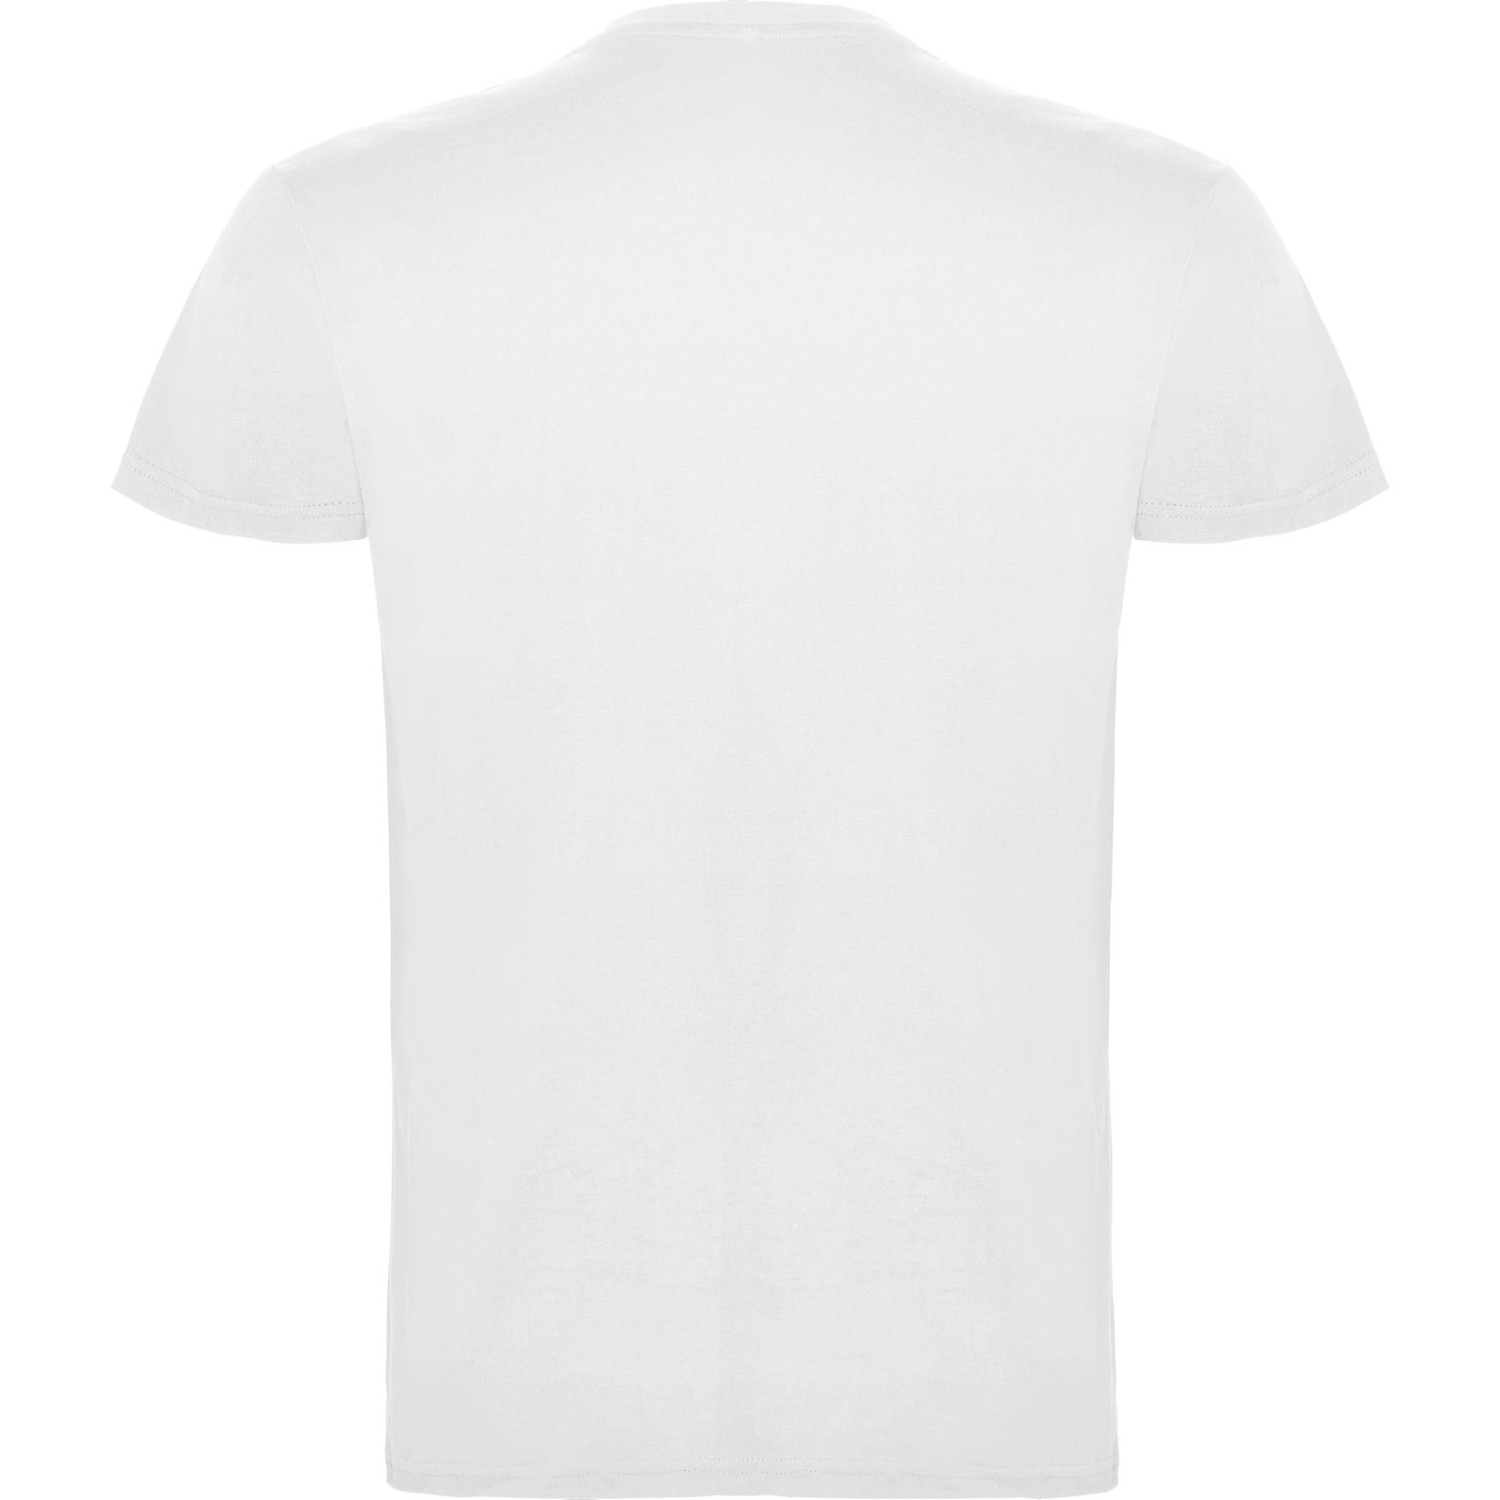 3. Foto T-Shirt BEAGLE Kurzarm Rundhals mit Druck (Farbe: weiß Größe: XS)